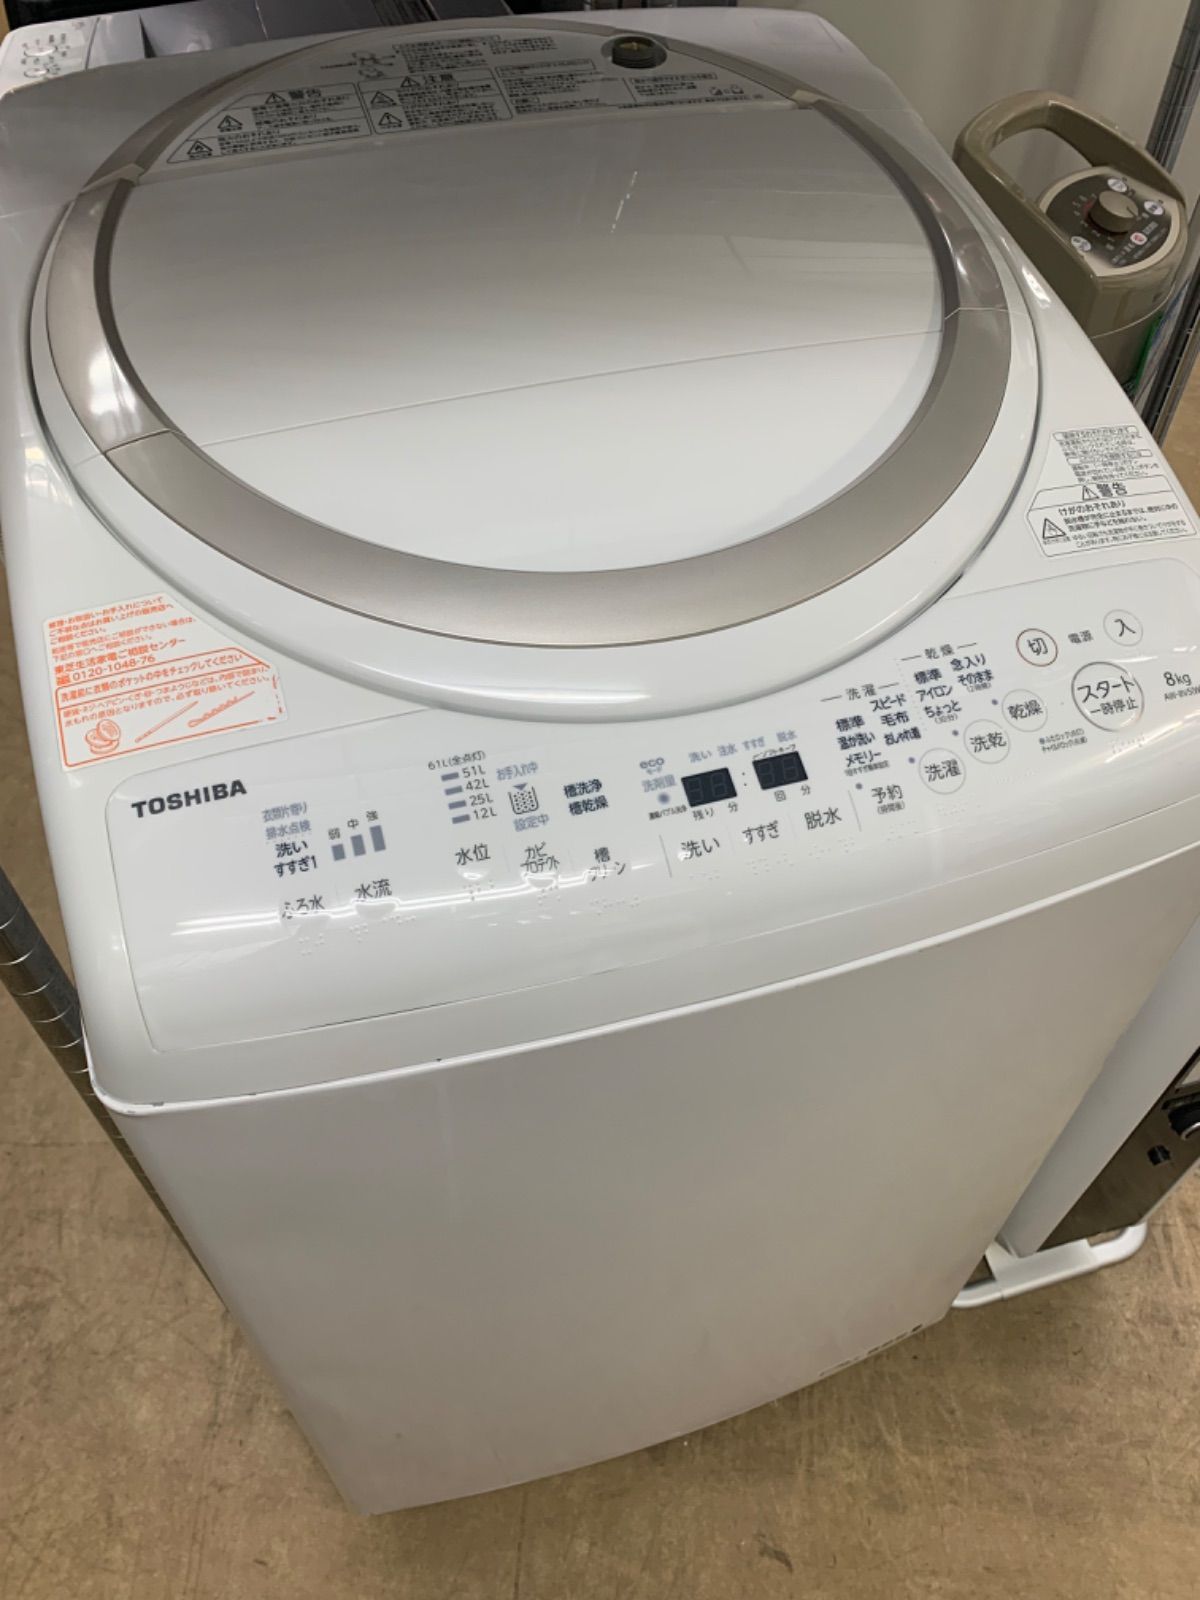 ◇TOSHIBA 洗濯乾燥機 8kg 4.5kg AW-8V5 - メルカリ